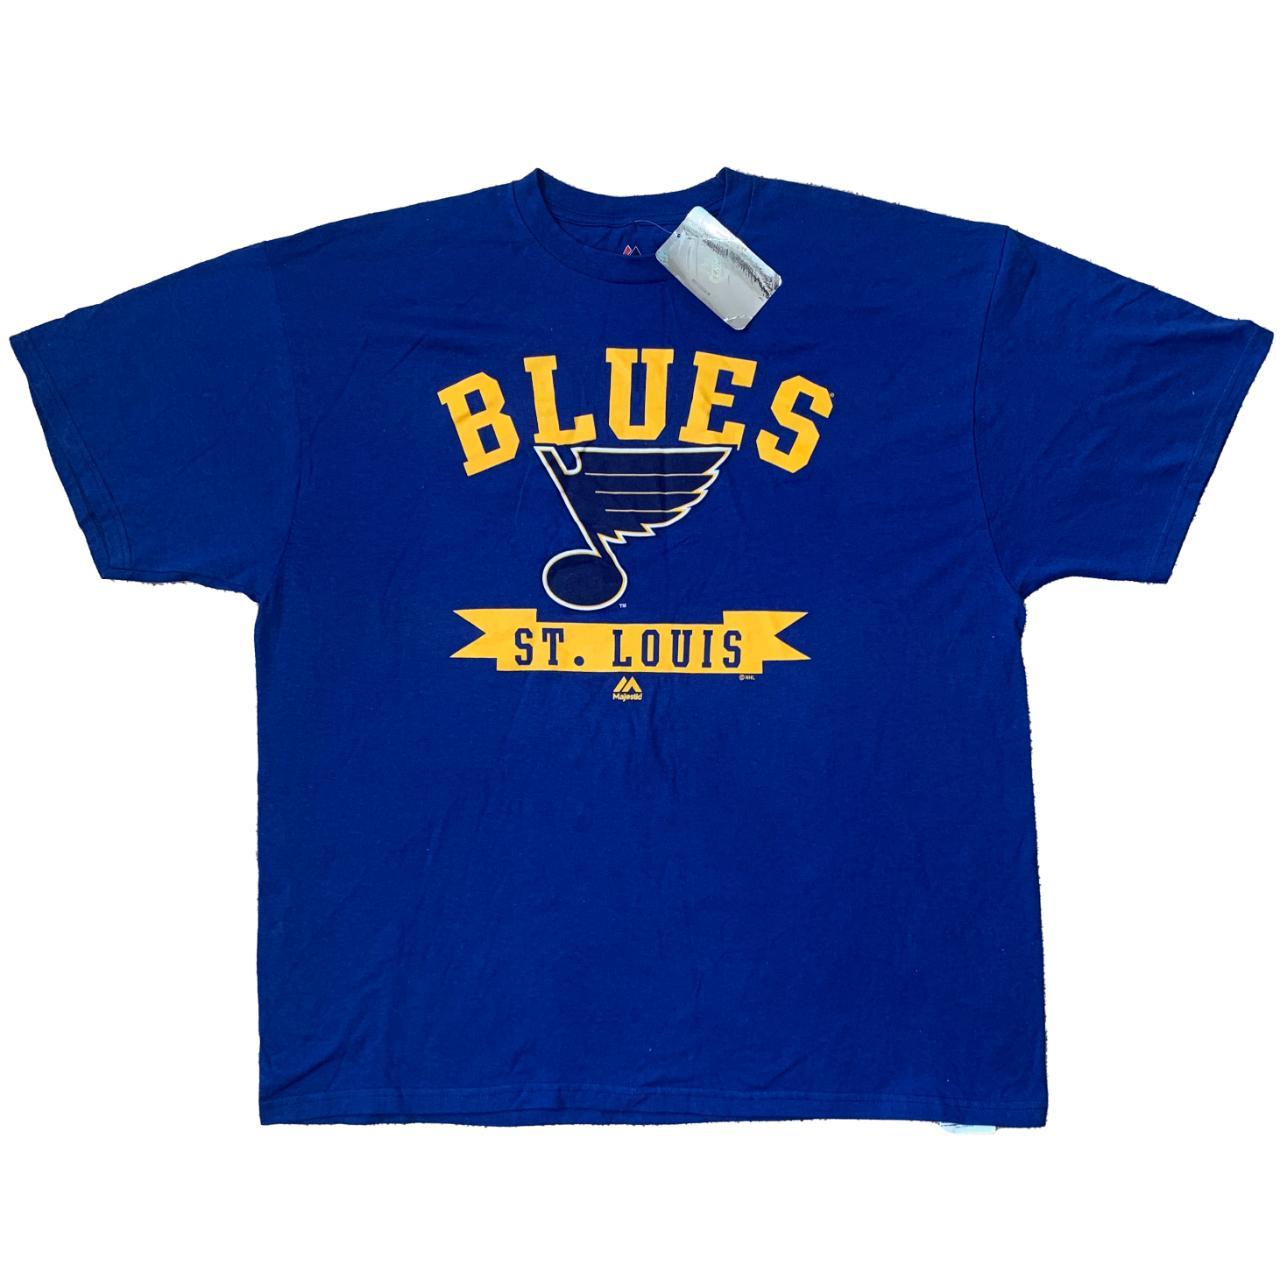 Majestic Athletic Men's Shirt - Blue - S